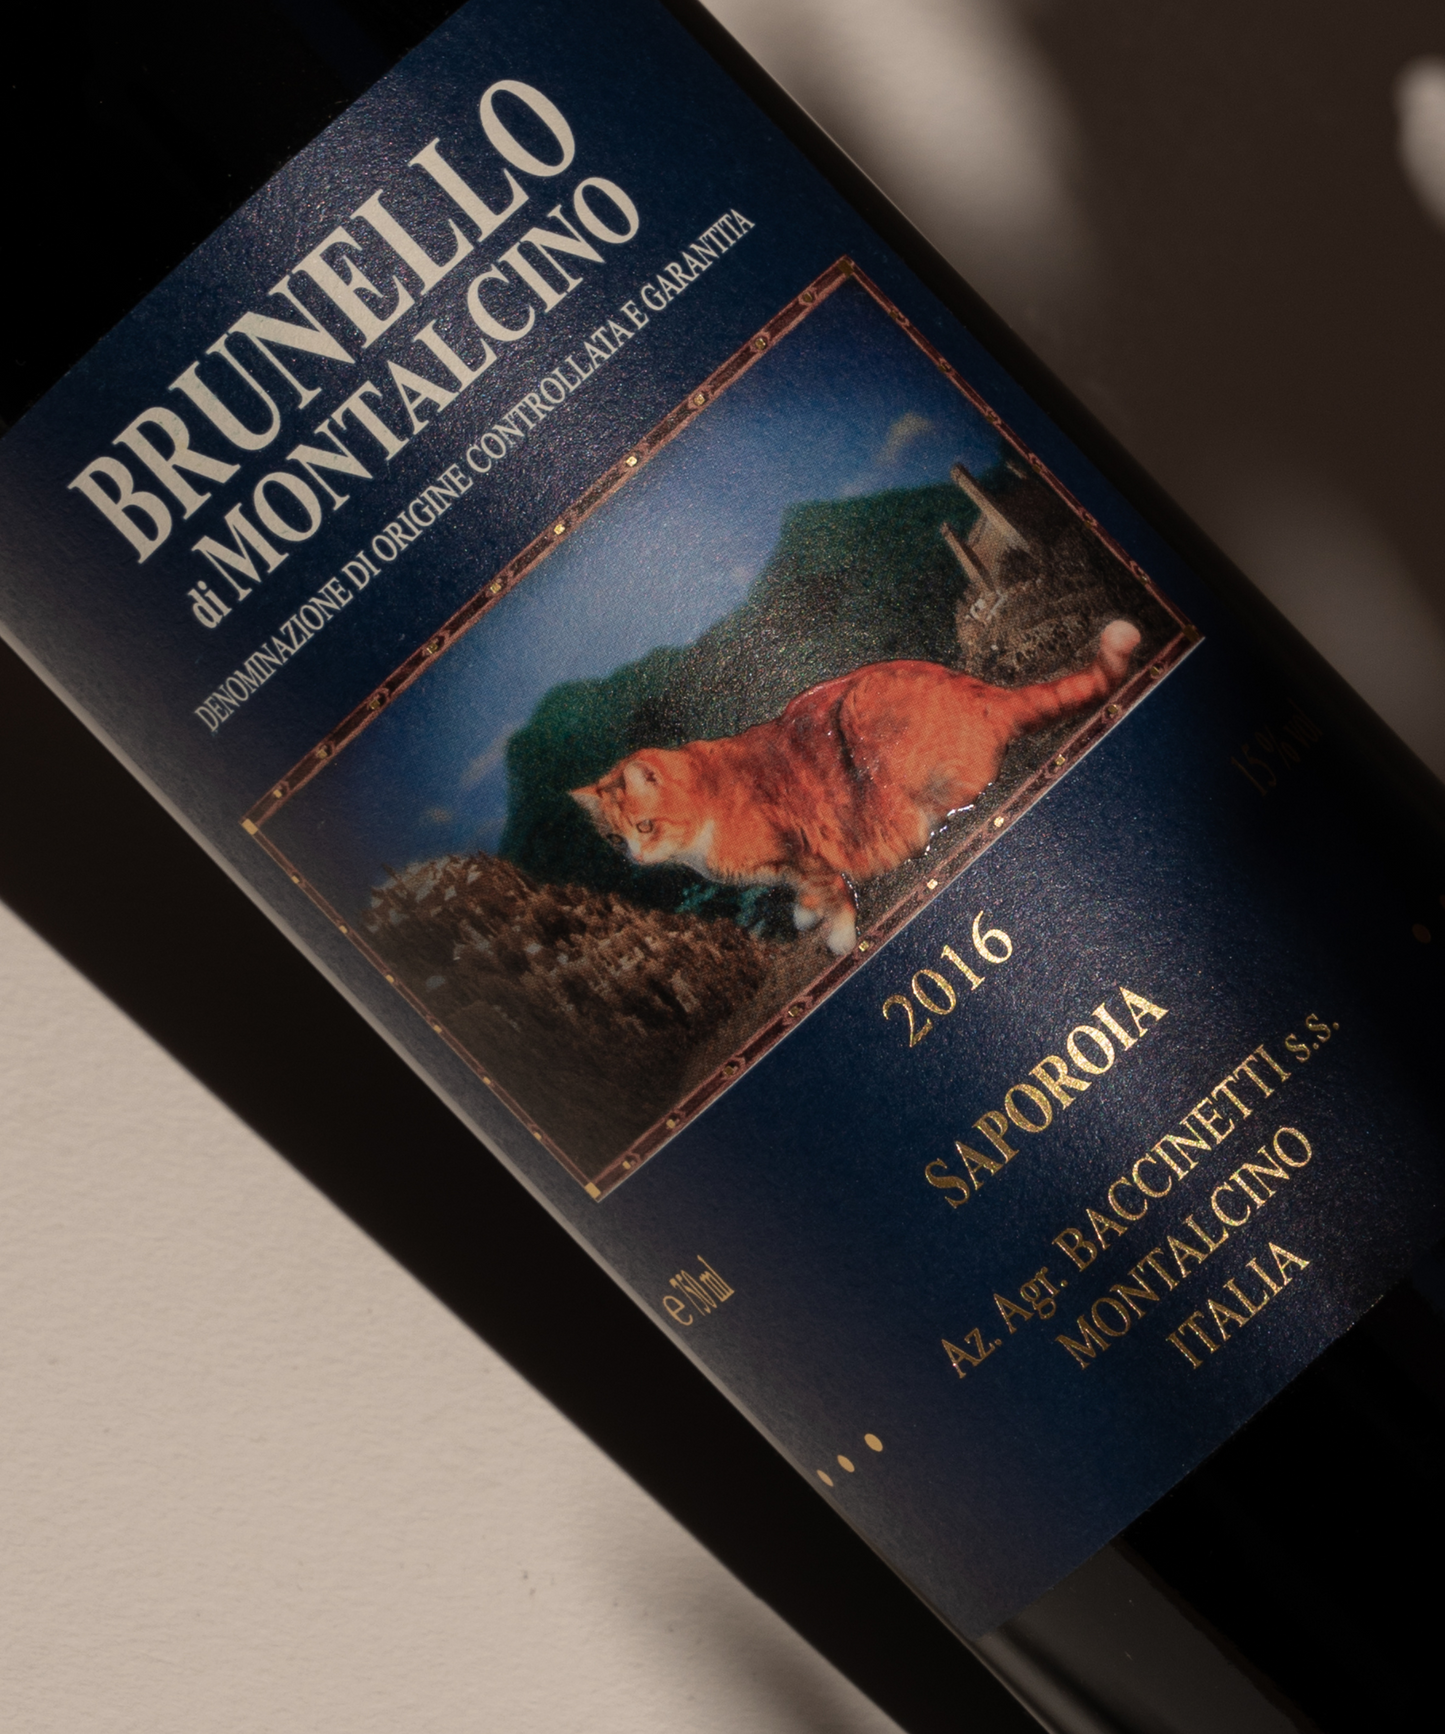 Bottle Brunello di Montalcino label